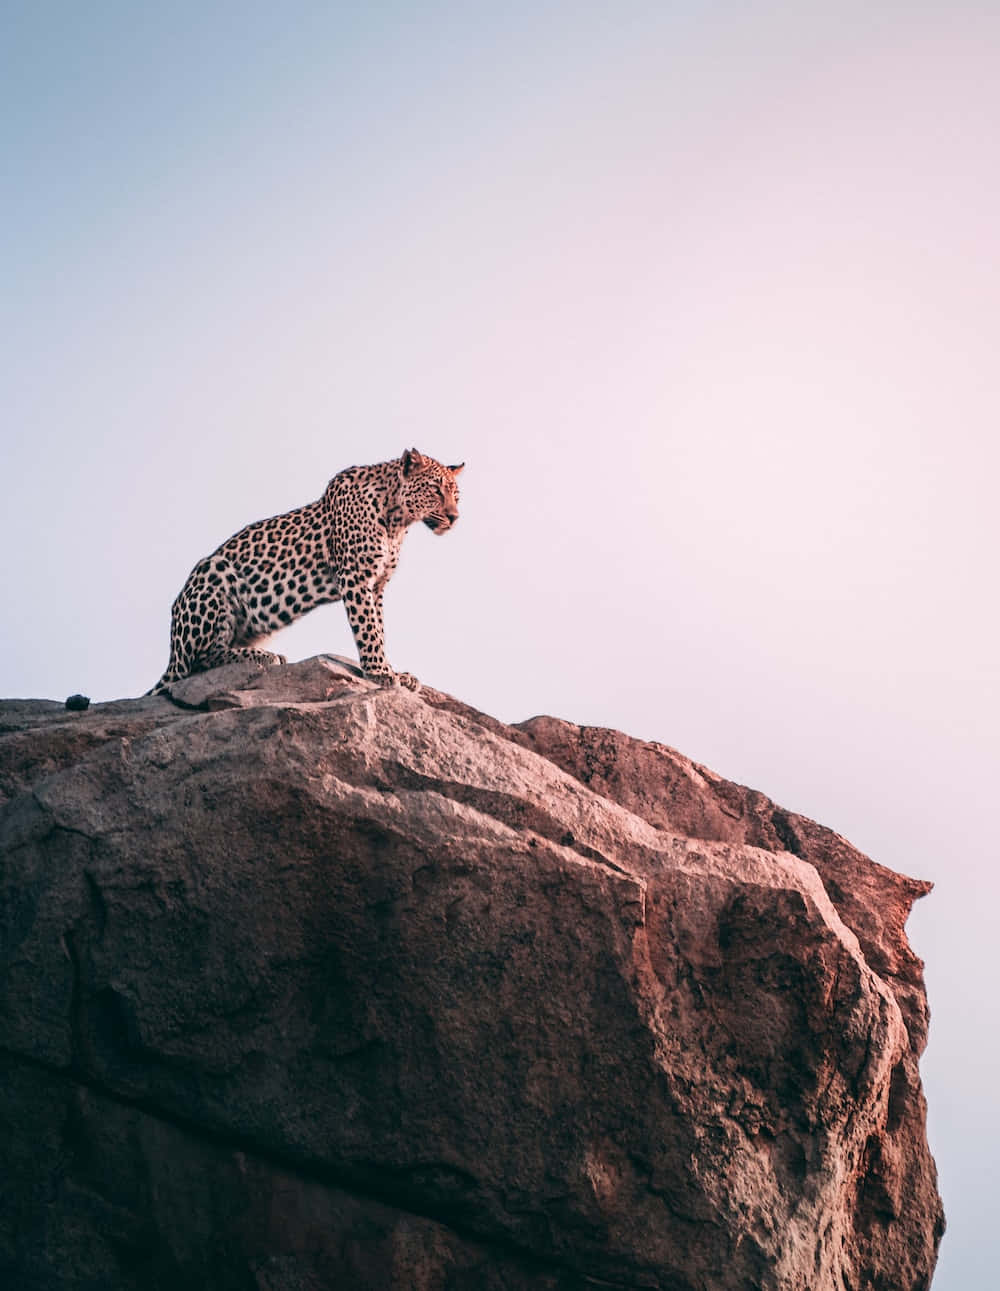 Imagende Un Leopardo, Un Animal Salvaje, En Un Acantilado.